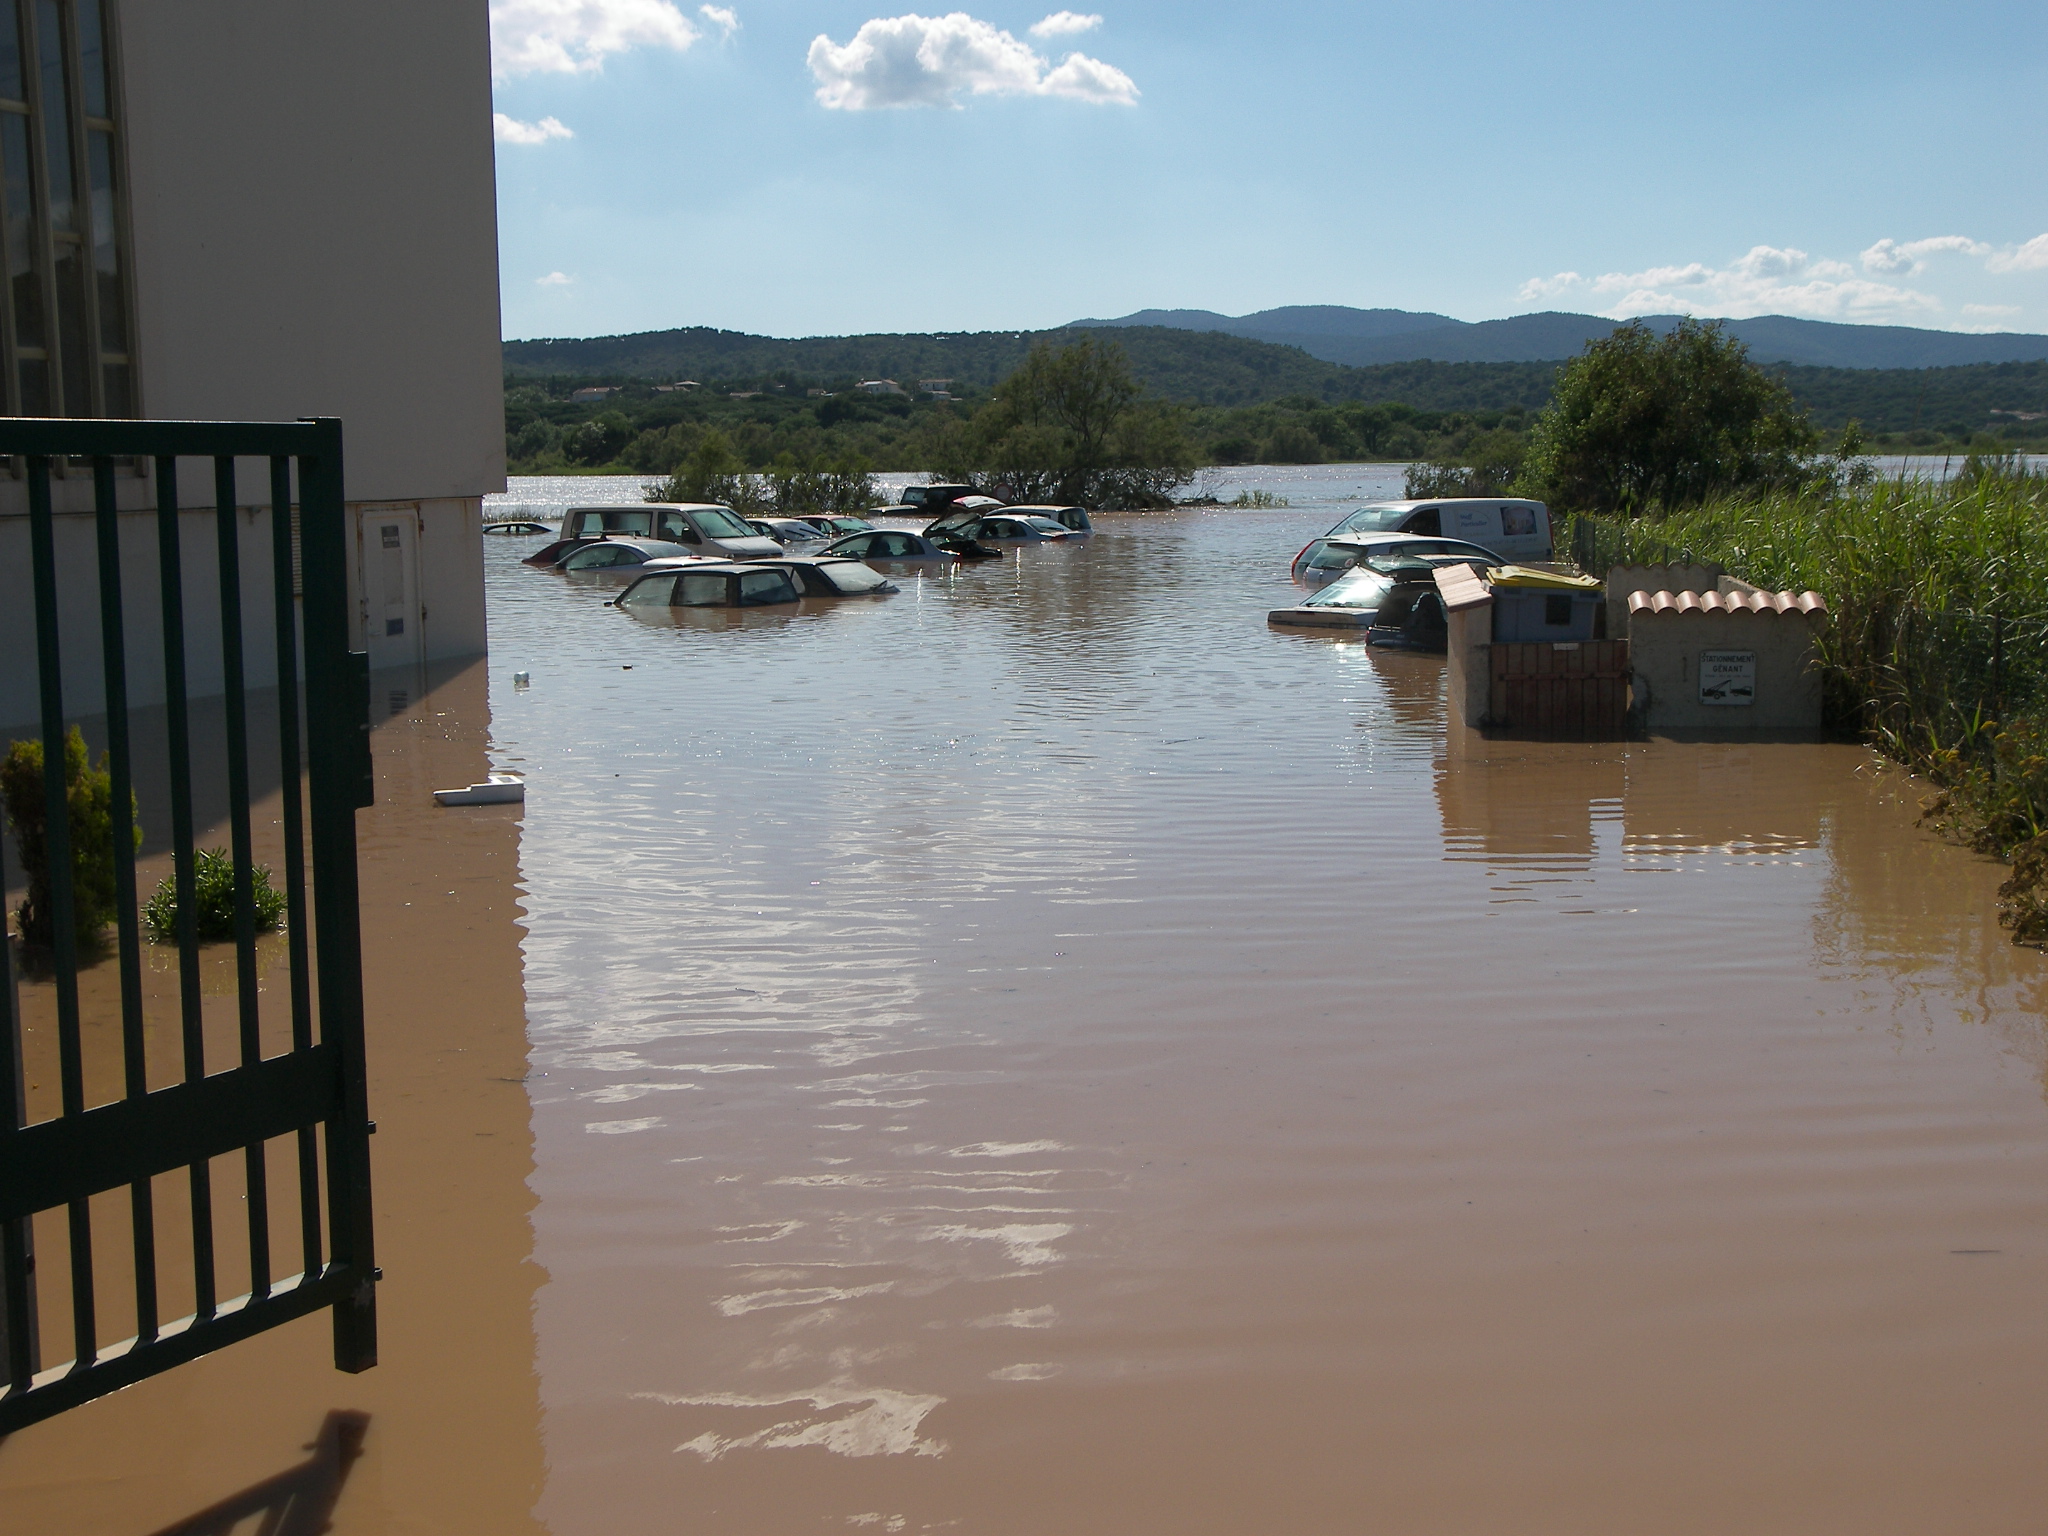 Les terribles inondations de juin 2010 dans le Var (ici dans la commune de Fréjus) restent ancrées dans les mémoires. ©️ Service Hydraulique Cours d’Eau (SHCE)/Cavem